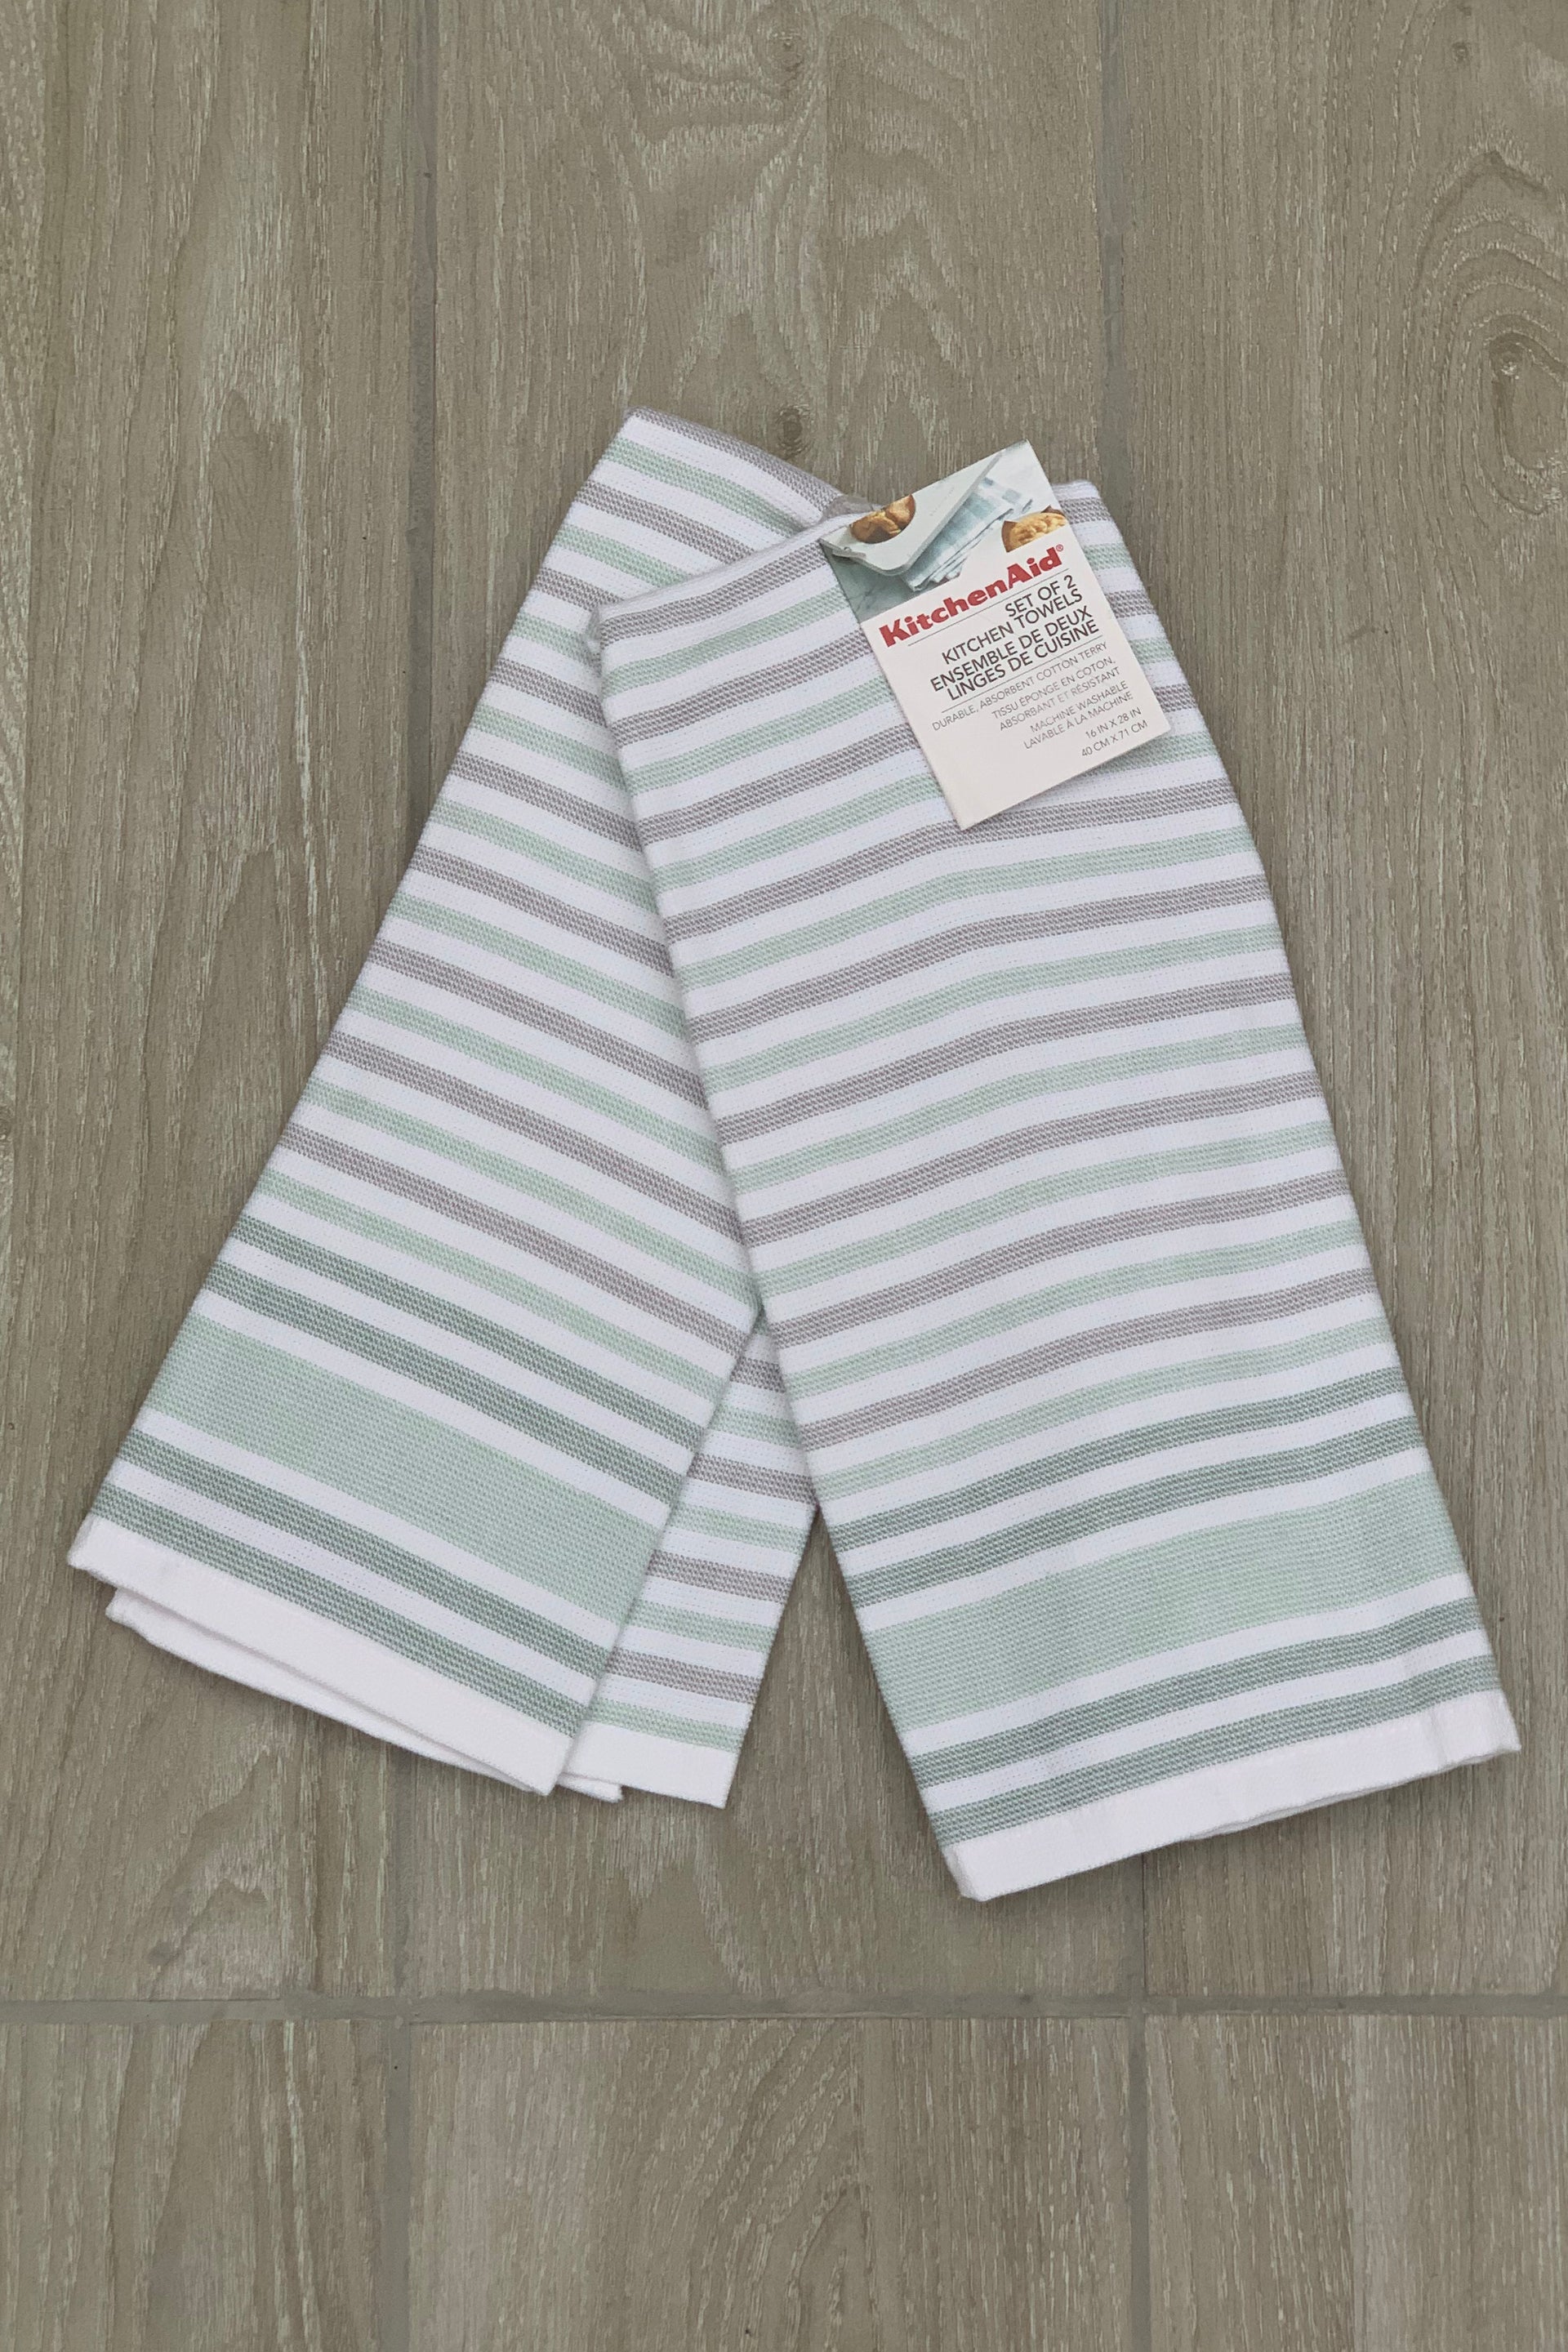 New KitchenAid Tea-Towels x2 Modern Grey Green Stripes